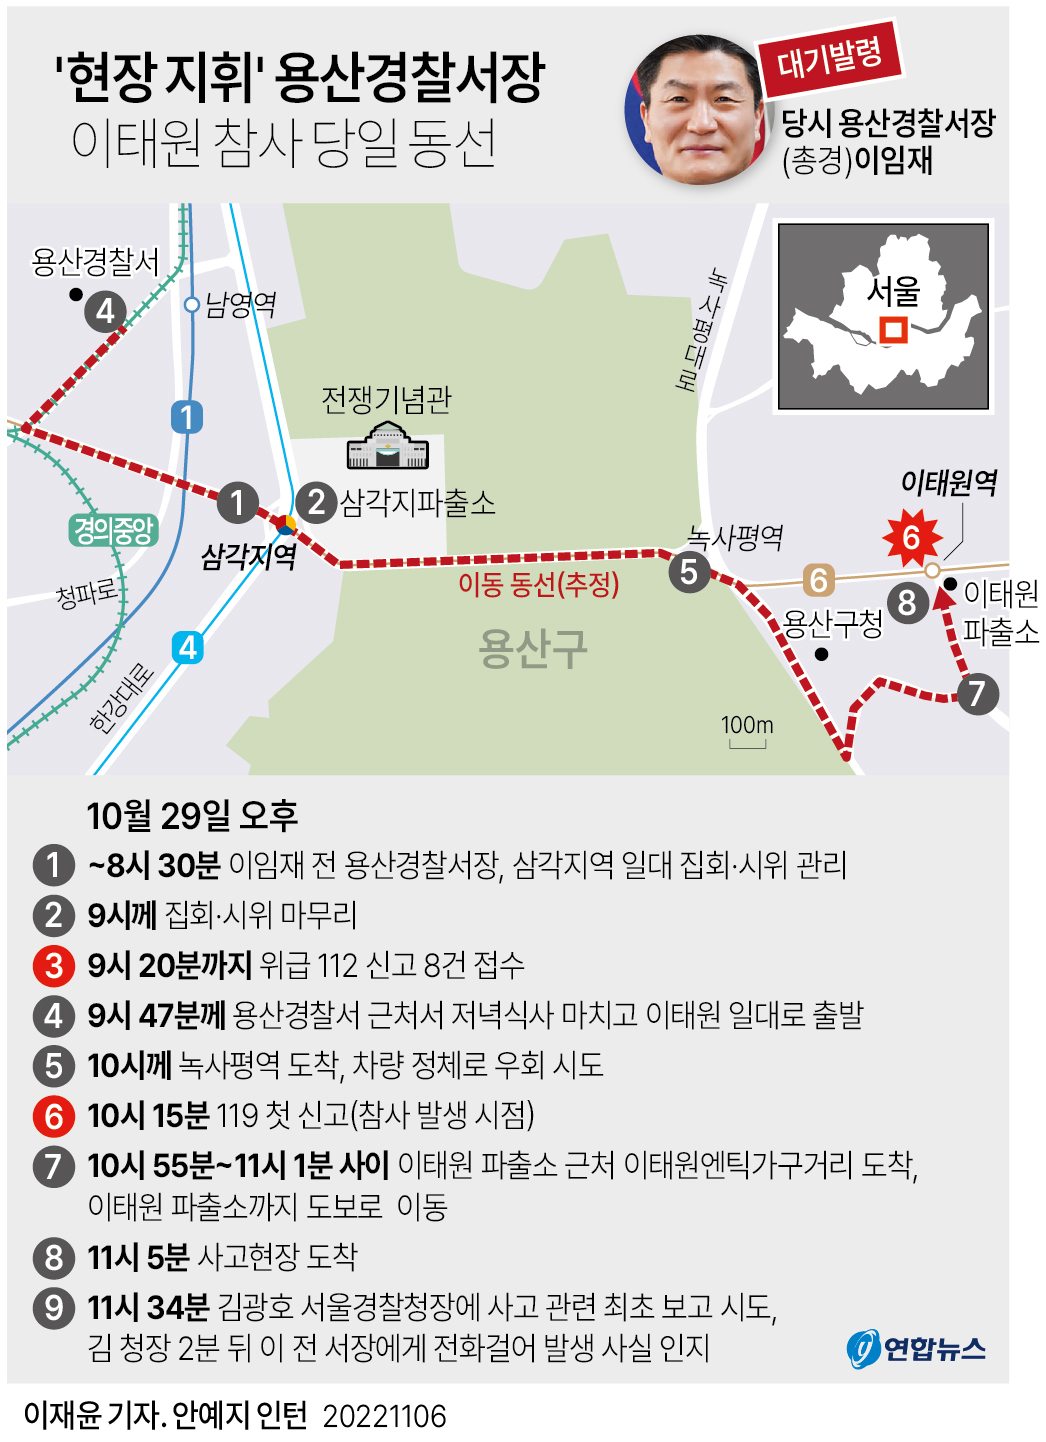 [그래픽] '현장 지휘' 용산경찰서장 이태원 참사 당일 동선